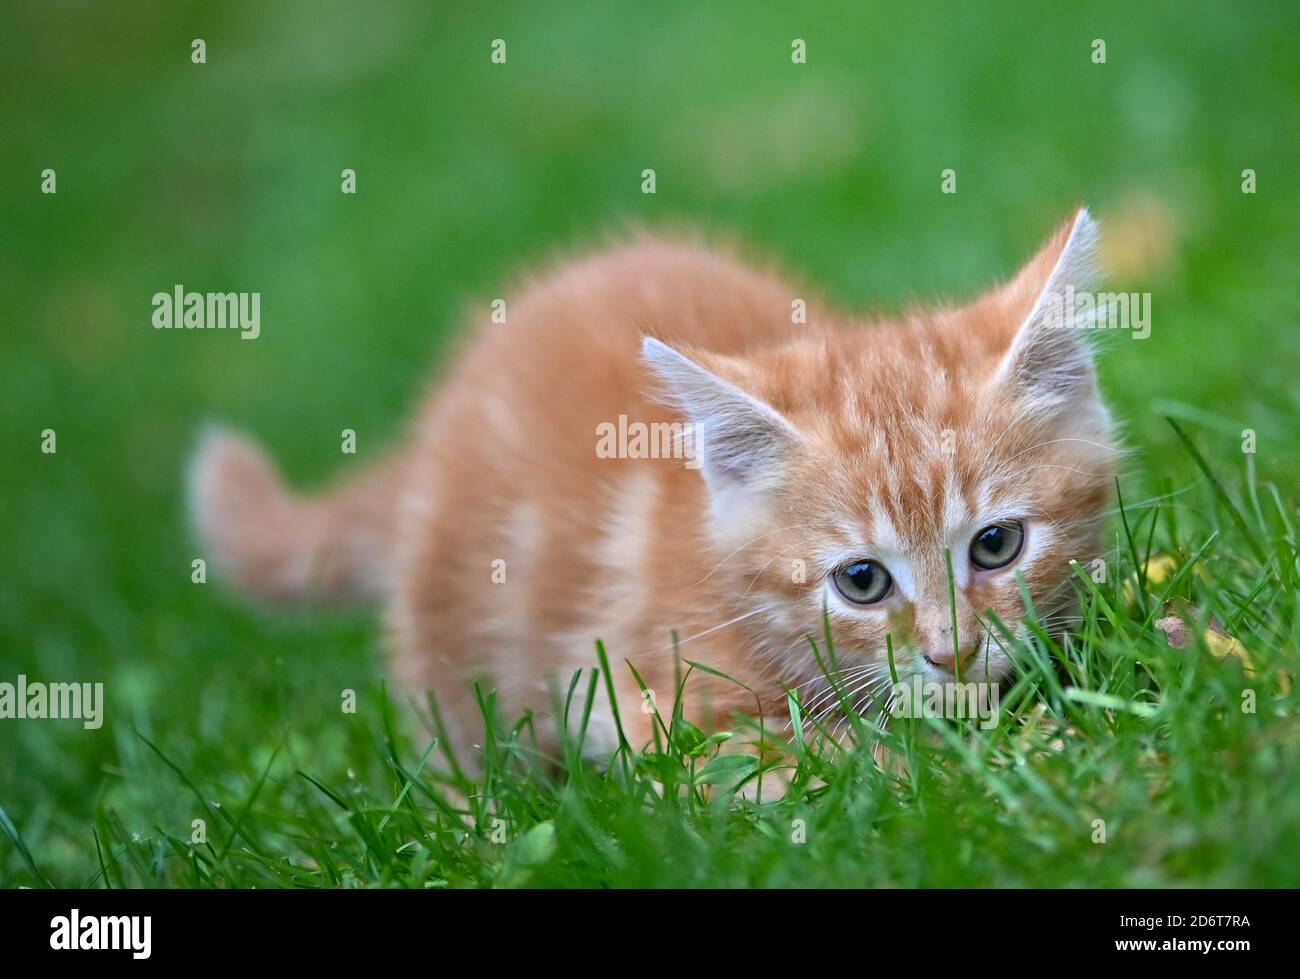 18 ottobre 2020, Brandeburgo, Sieversdorf: Un gattino di circa otto settimane esplora i suoi dintorni su un prato in un giardino. Foto: Patrick Pleul/dpa-Zentralbild/ZB Foto Stock